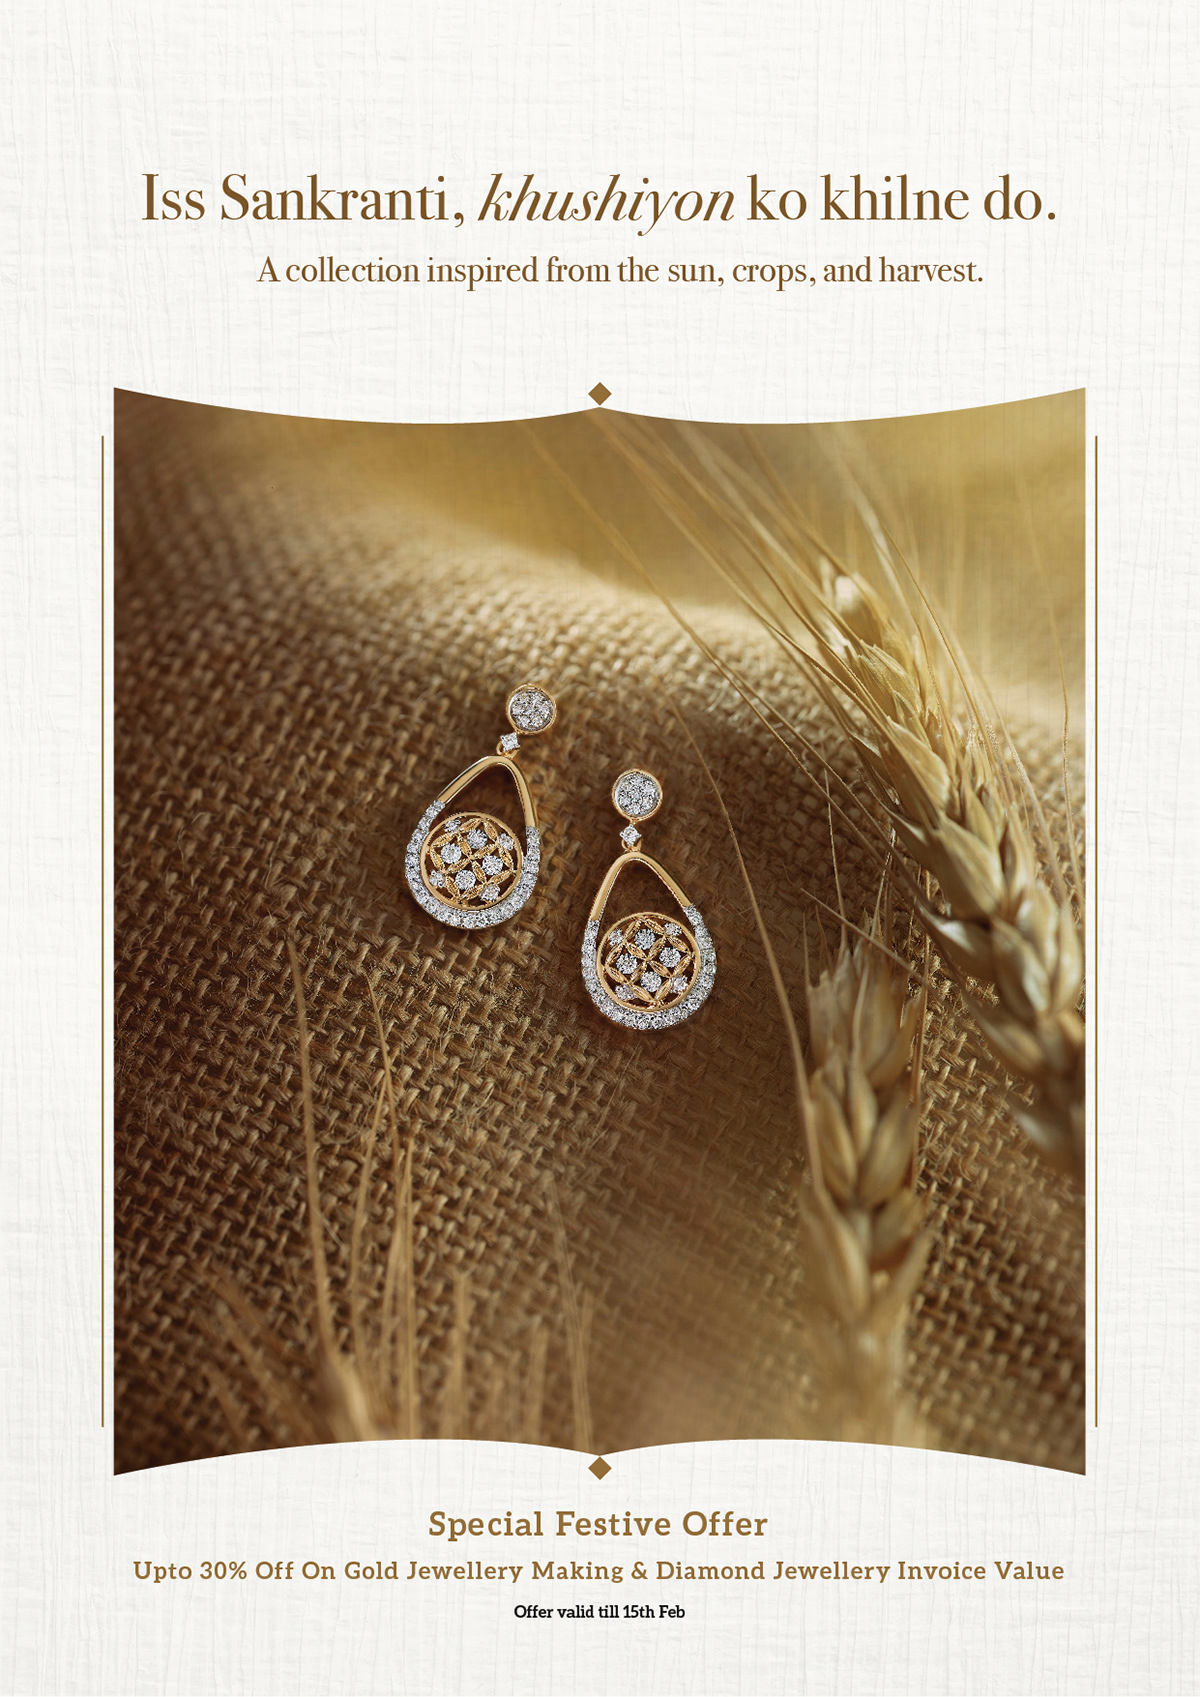 bihu earrings festival Jewellery Sankranti wheat Harvest season jute Reliance Jewels